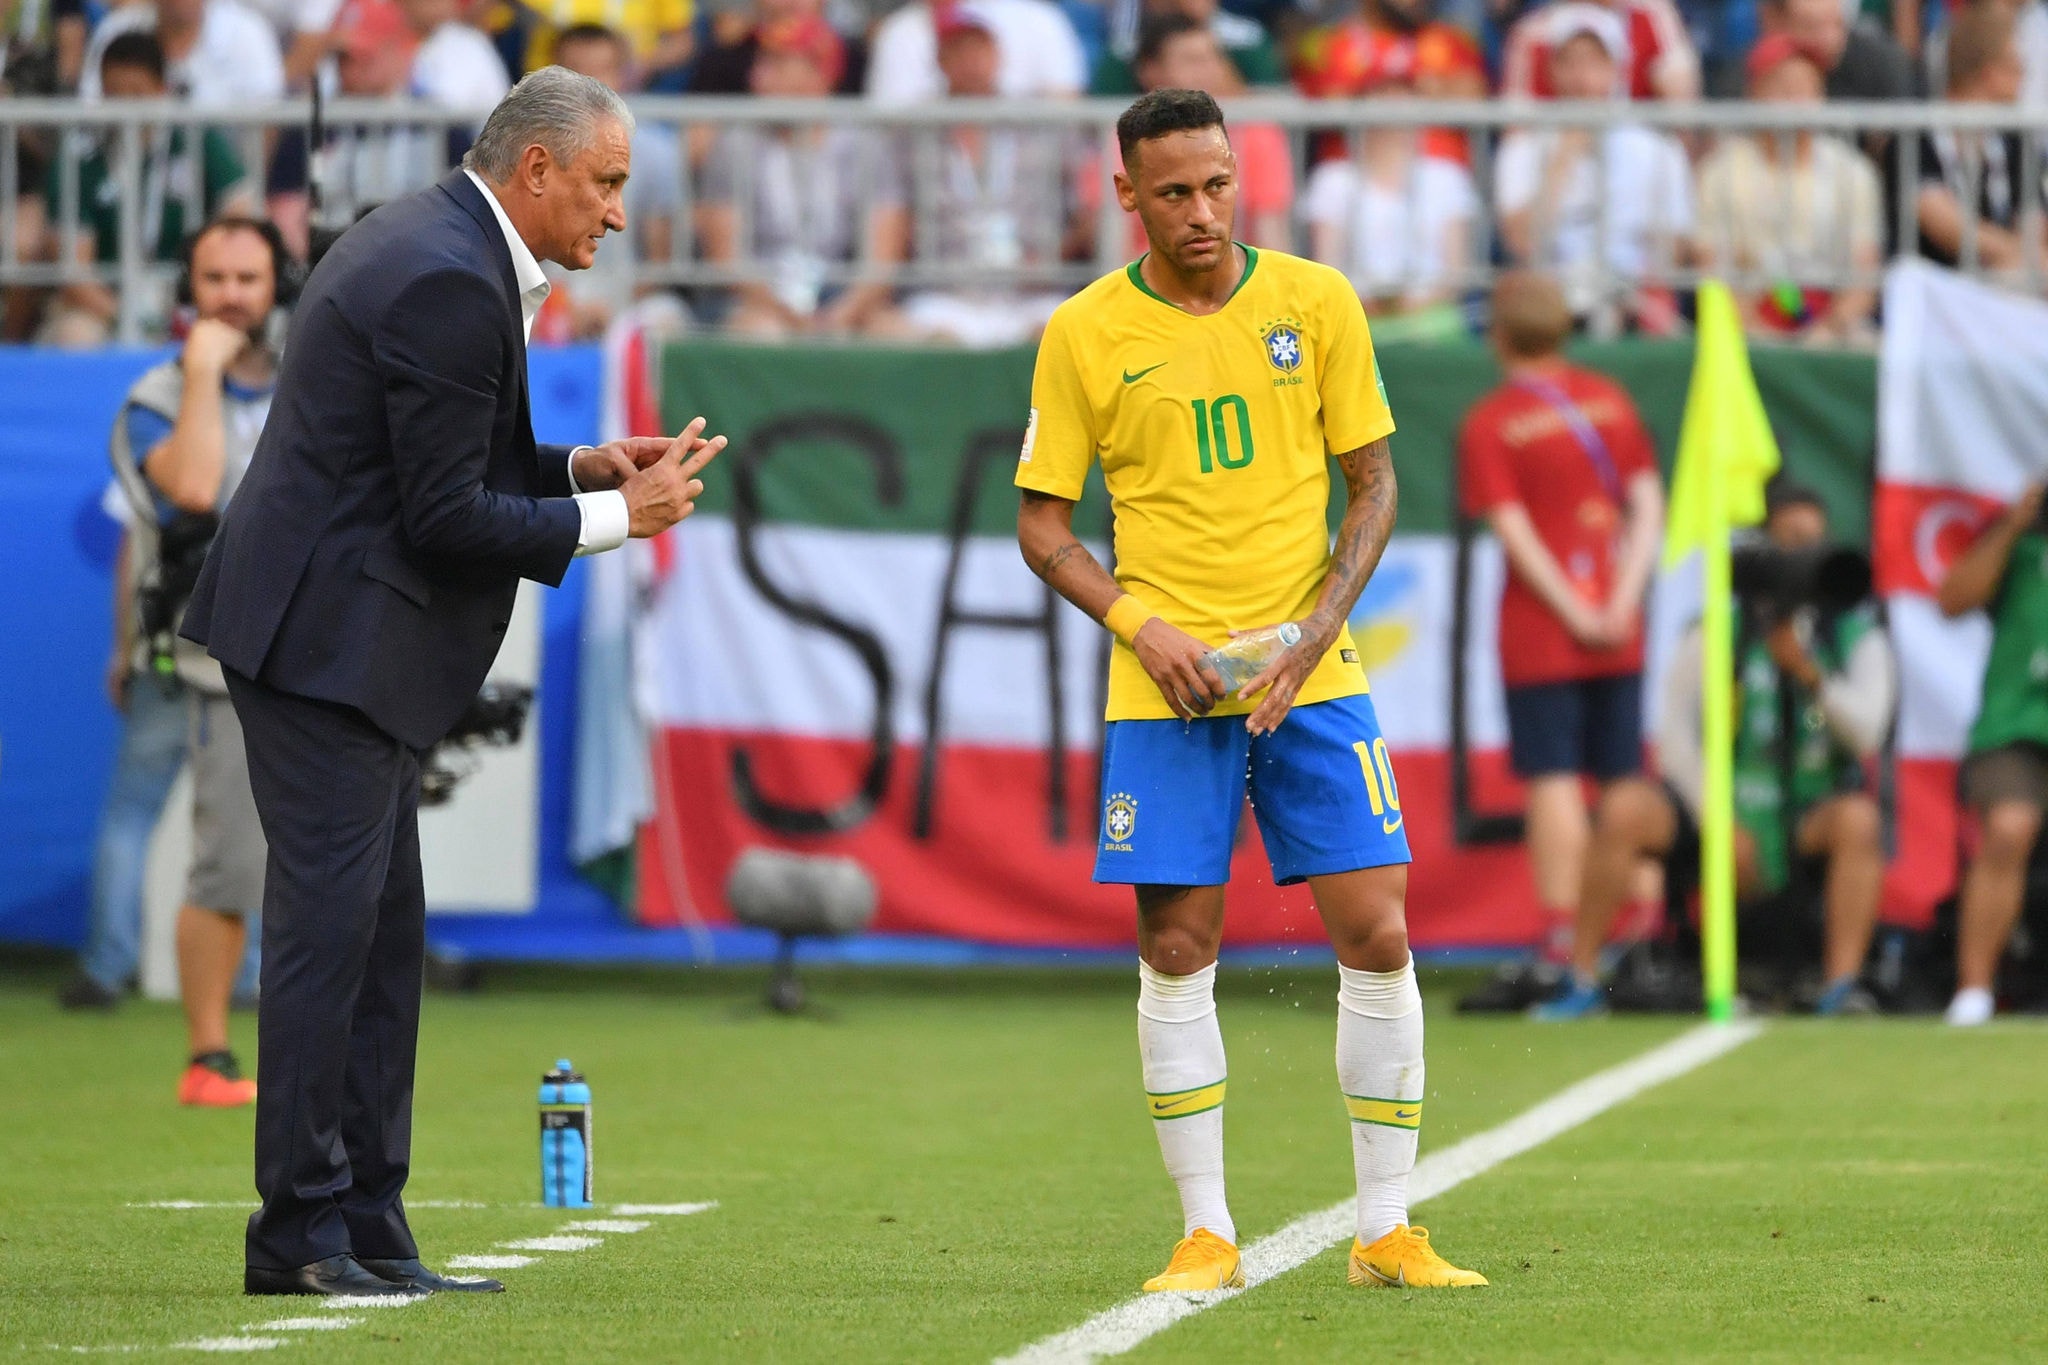 "Neymar está melhorando nesse aspecto (emocional). Tem que ficar focado. Quando gastamos energia em outras situações que não seja jogar, perde o foco", disse Tite